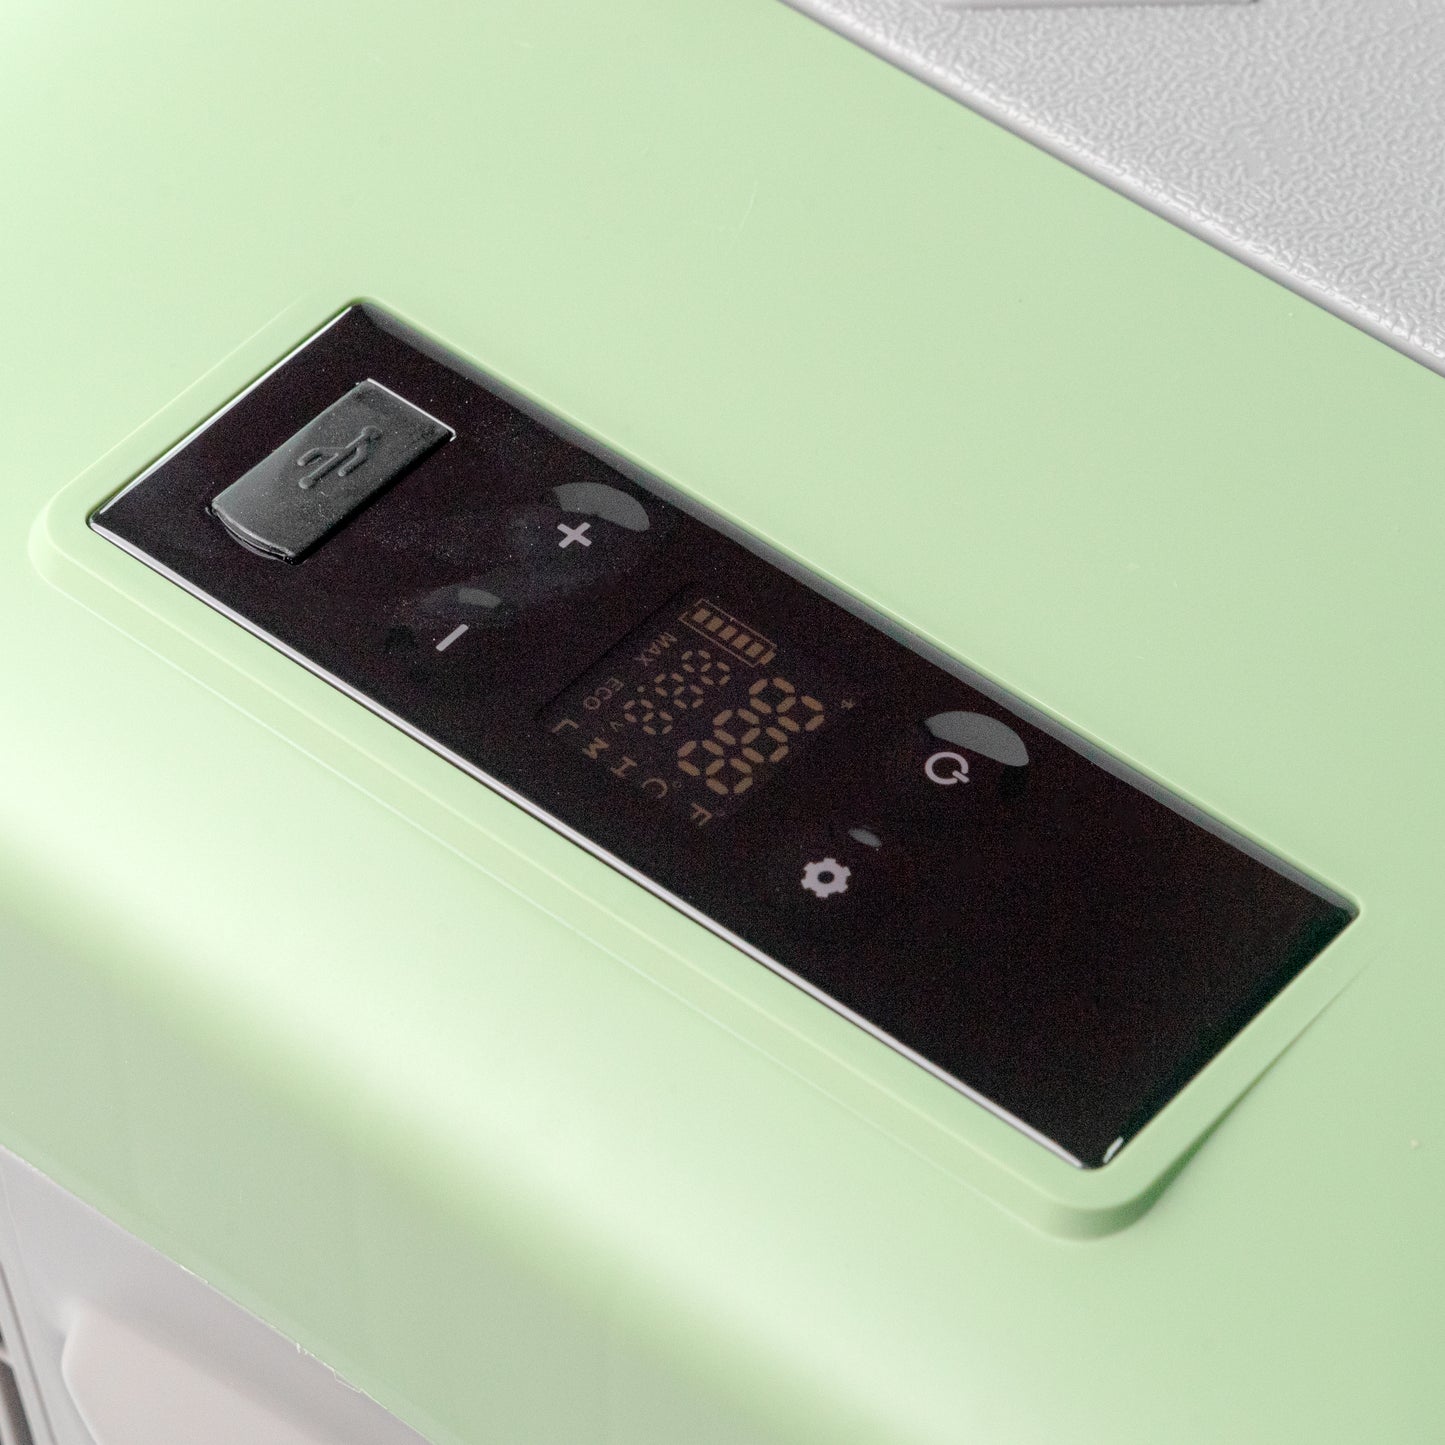 ثلاجة سيارة كروني 15 لتر C15 12 فولت مبرد سيارة حراري للتخييم وفريزر